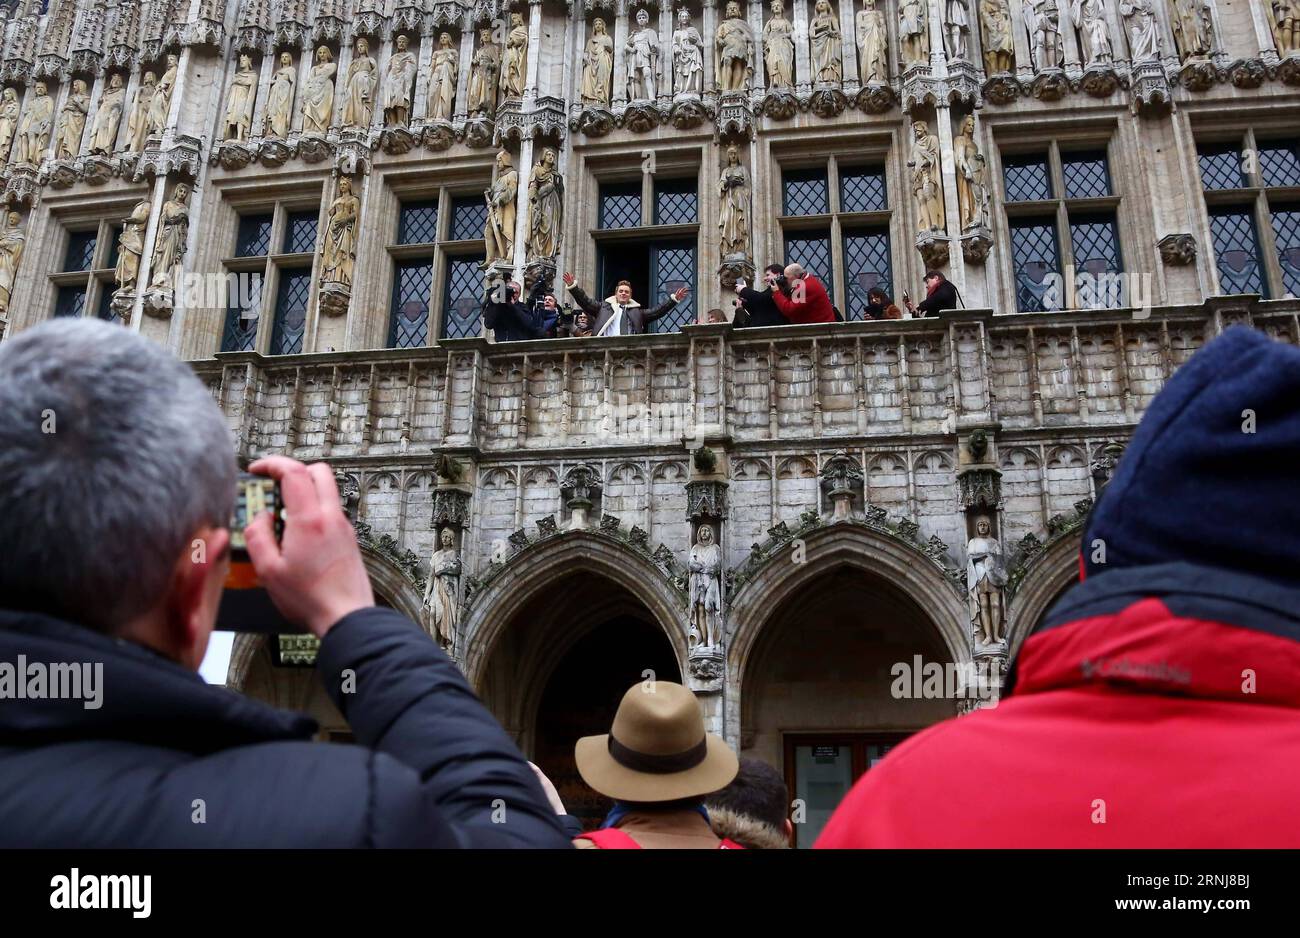 (170108) -- BRUXELLES, le 8 janvier 2017 -- Un homme cosjoué en tant que Tintin agite aux fans des aventures de Tintin sur le balcon de l'hôtel de ville de Bruxelles, Belgique, le 7 janvier 2017. Un spectacle de personnages comiques des aventures de Tintin a eu lieu samedi à Bruxelles. Les comics aventures de Tintin racontent les histoires d'un jeune reporter et explorateur belge. Ils ont été traduits dans des dizaines de langues et adaptés à la radio, à la télévision, au théâtre et au cinéma. (Zxj) BELGIQUE-BRUXELLES- LES AVENTURES DE TINTIN -SHOW GongxBing PUBLICATIONxNOTxINxCHN Bruxelles Jan 8 2017 a Man as Tintin wave to the supp Banque D'Images